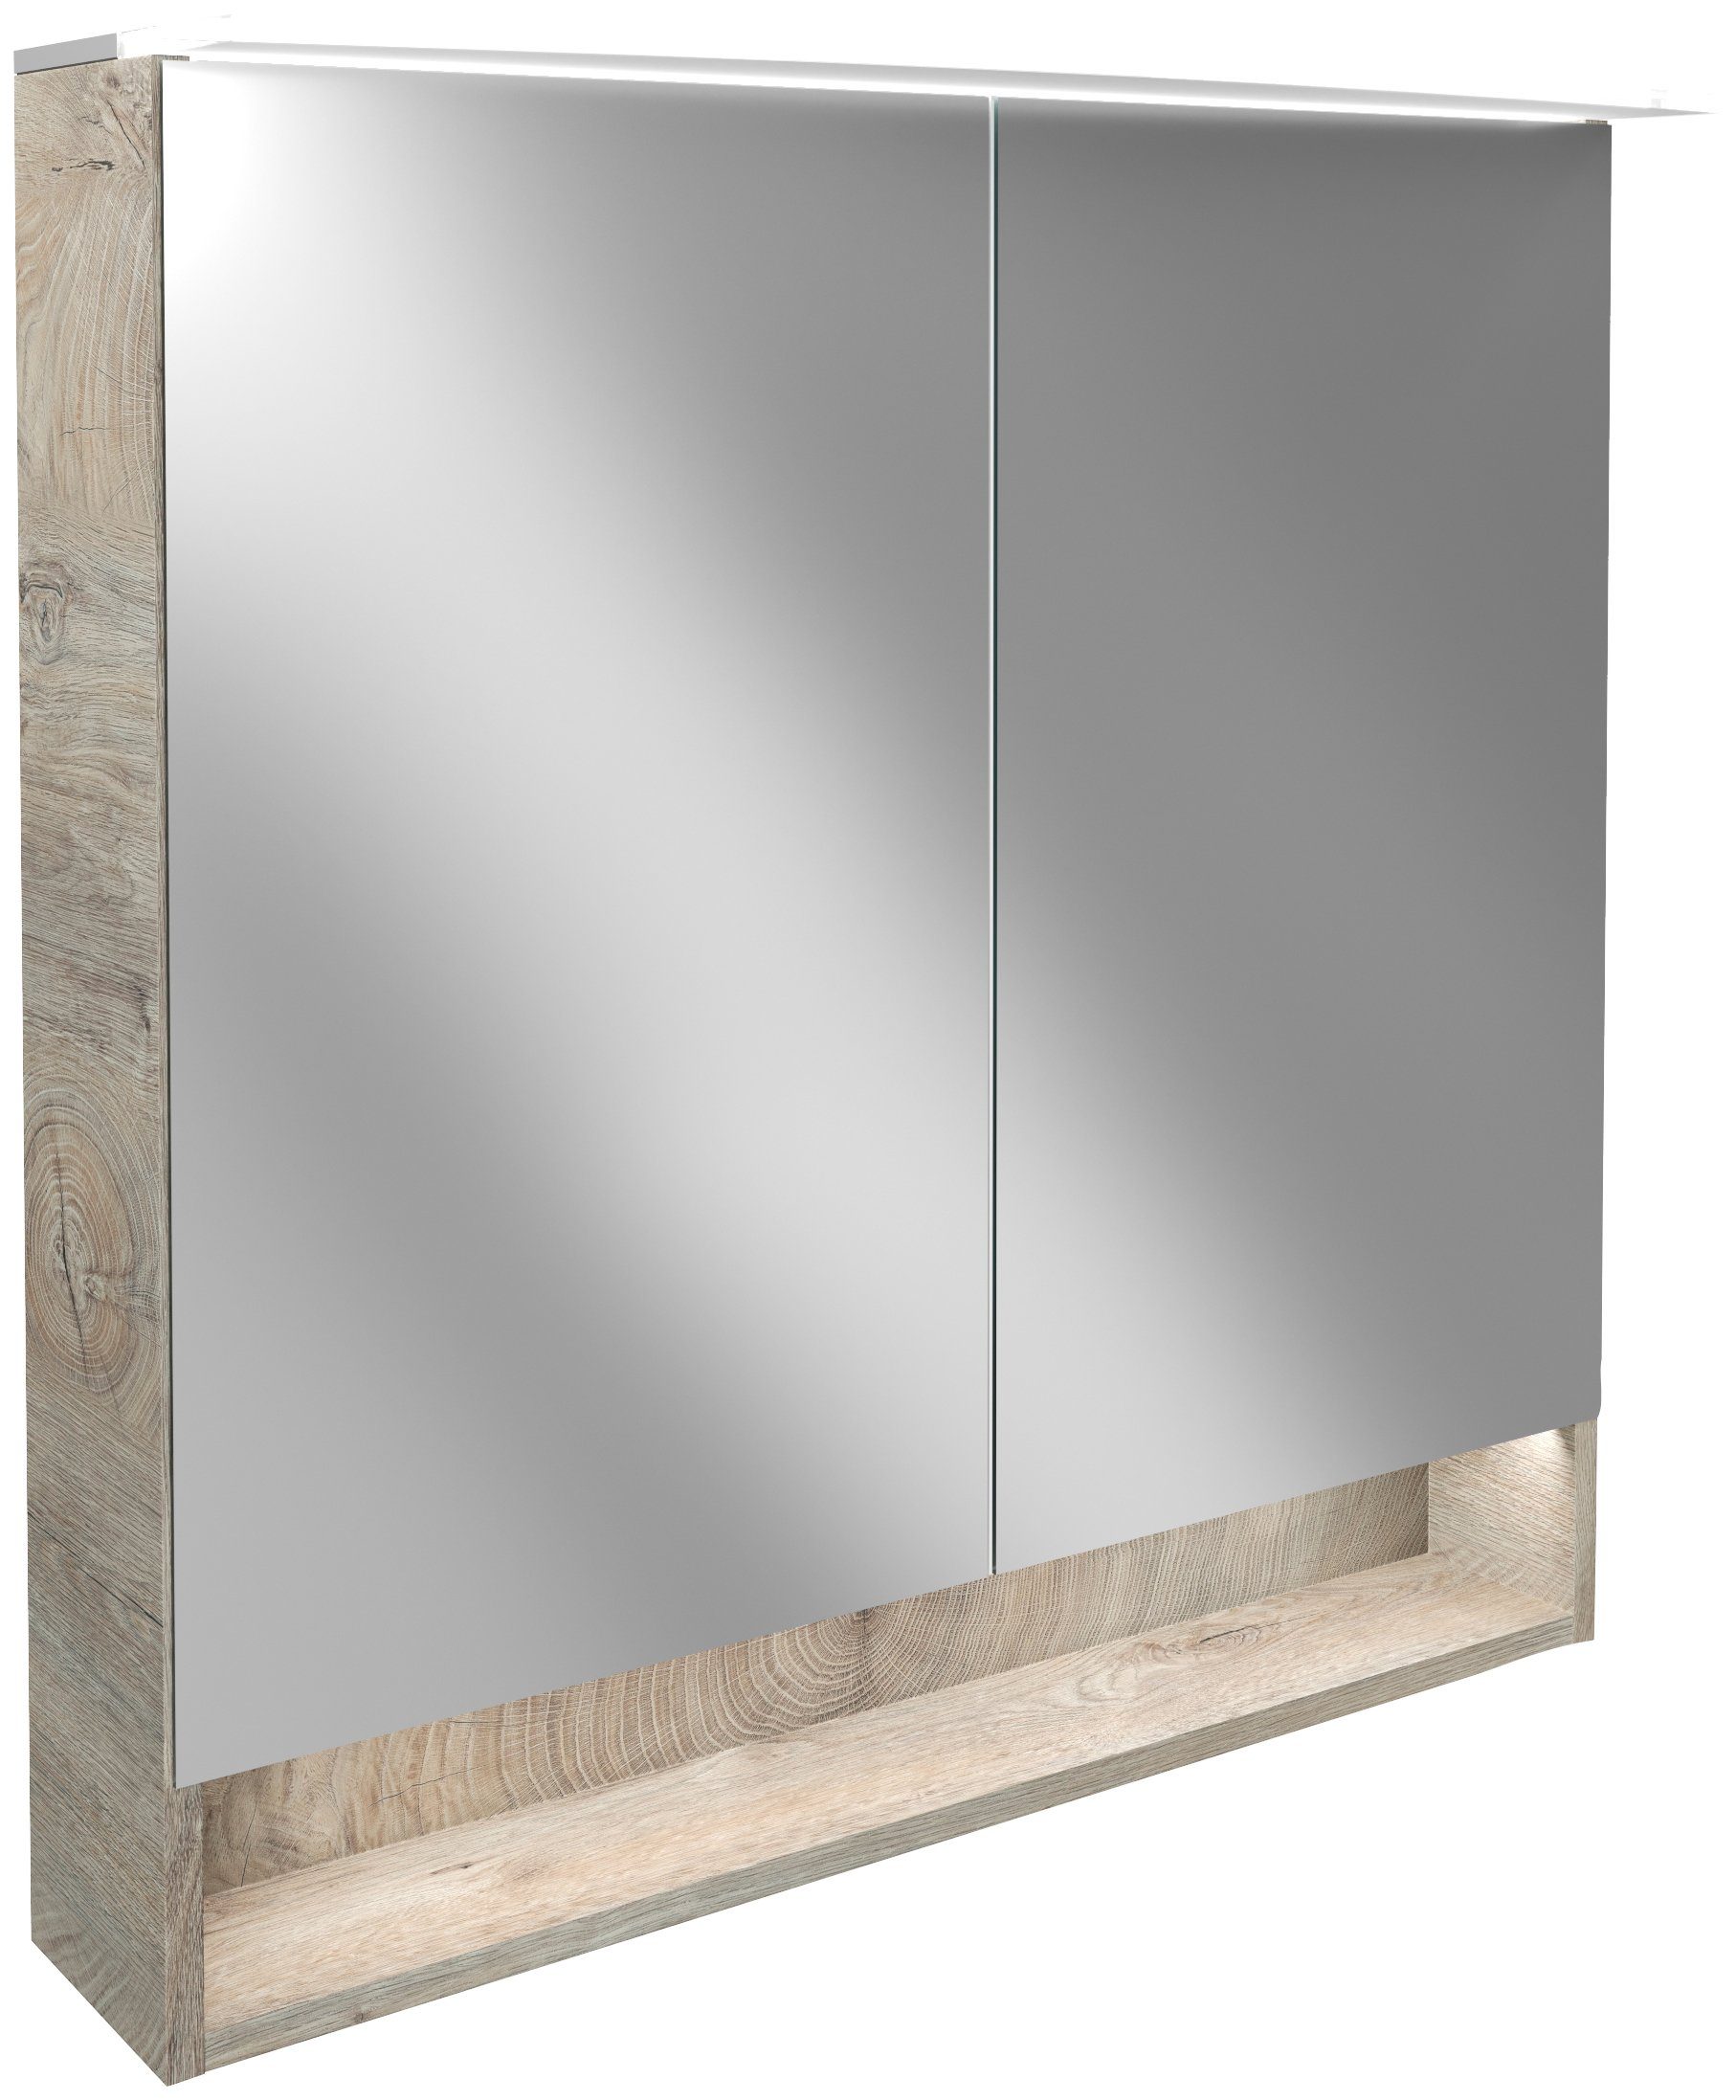 180°-Styling FACKELMANN bequemes Spiegelschrank Innenspiegel für Badmöbel, B.Style